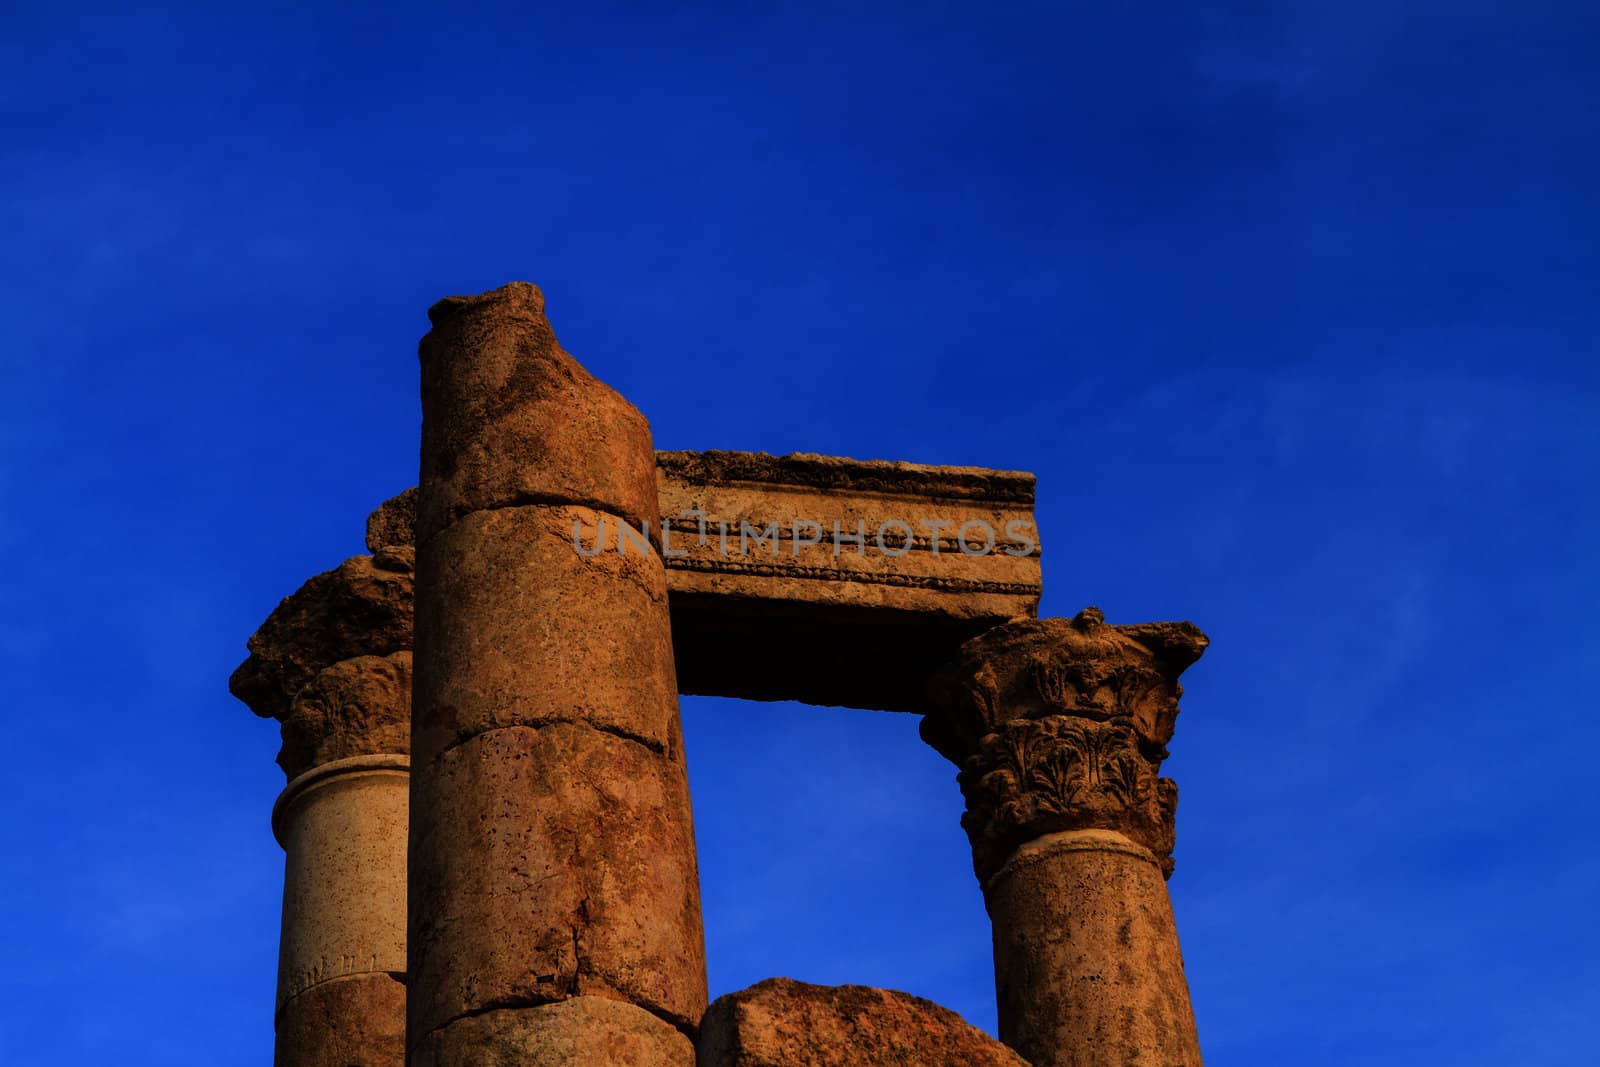 Temple of Hercules in Amman Citadel, Al-Qasr site, Jordan